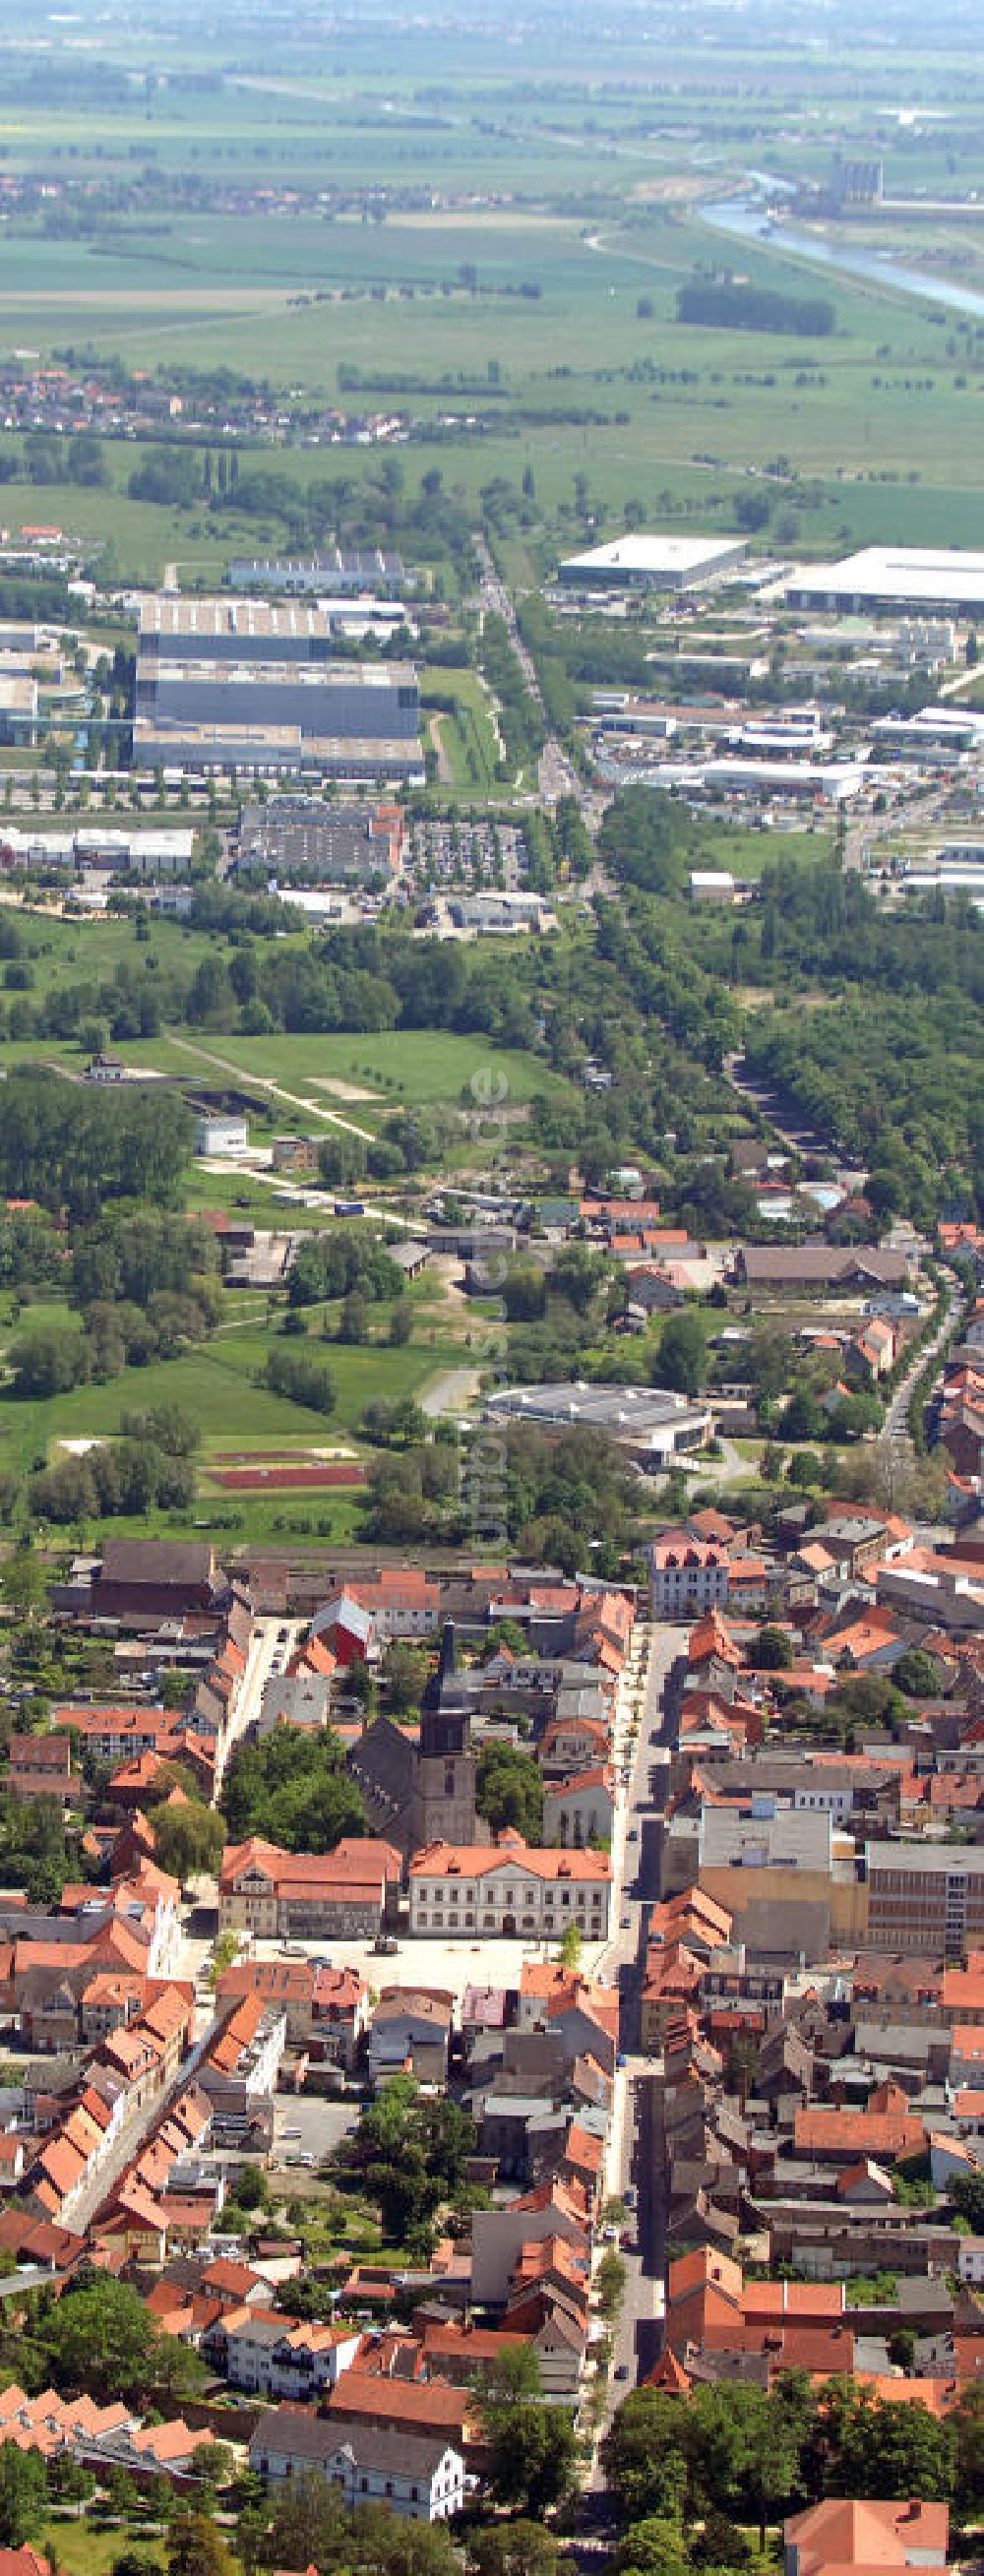 Luftbild Haldensleben - Innenstadt von Haldensleben